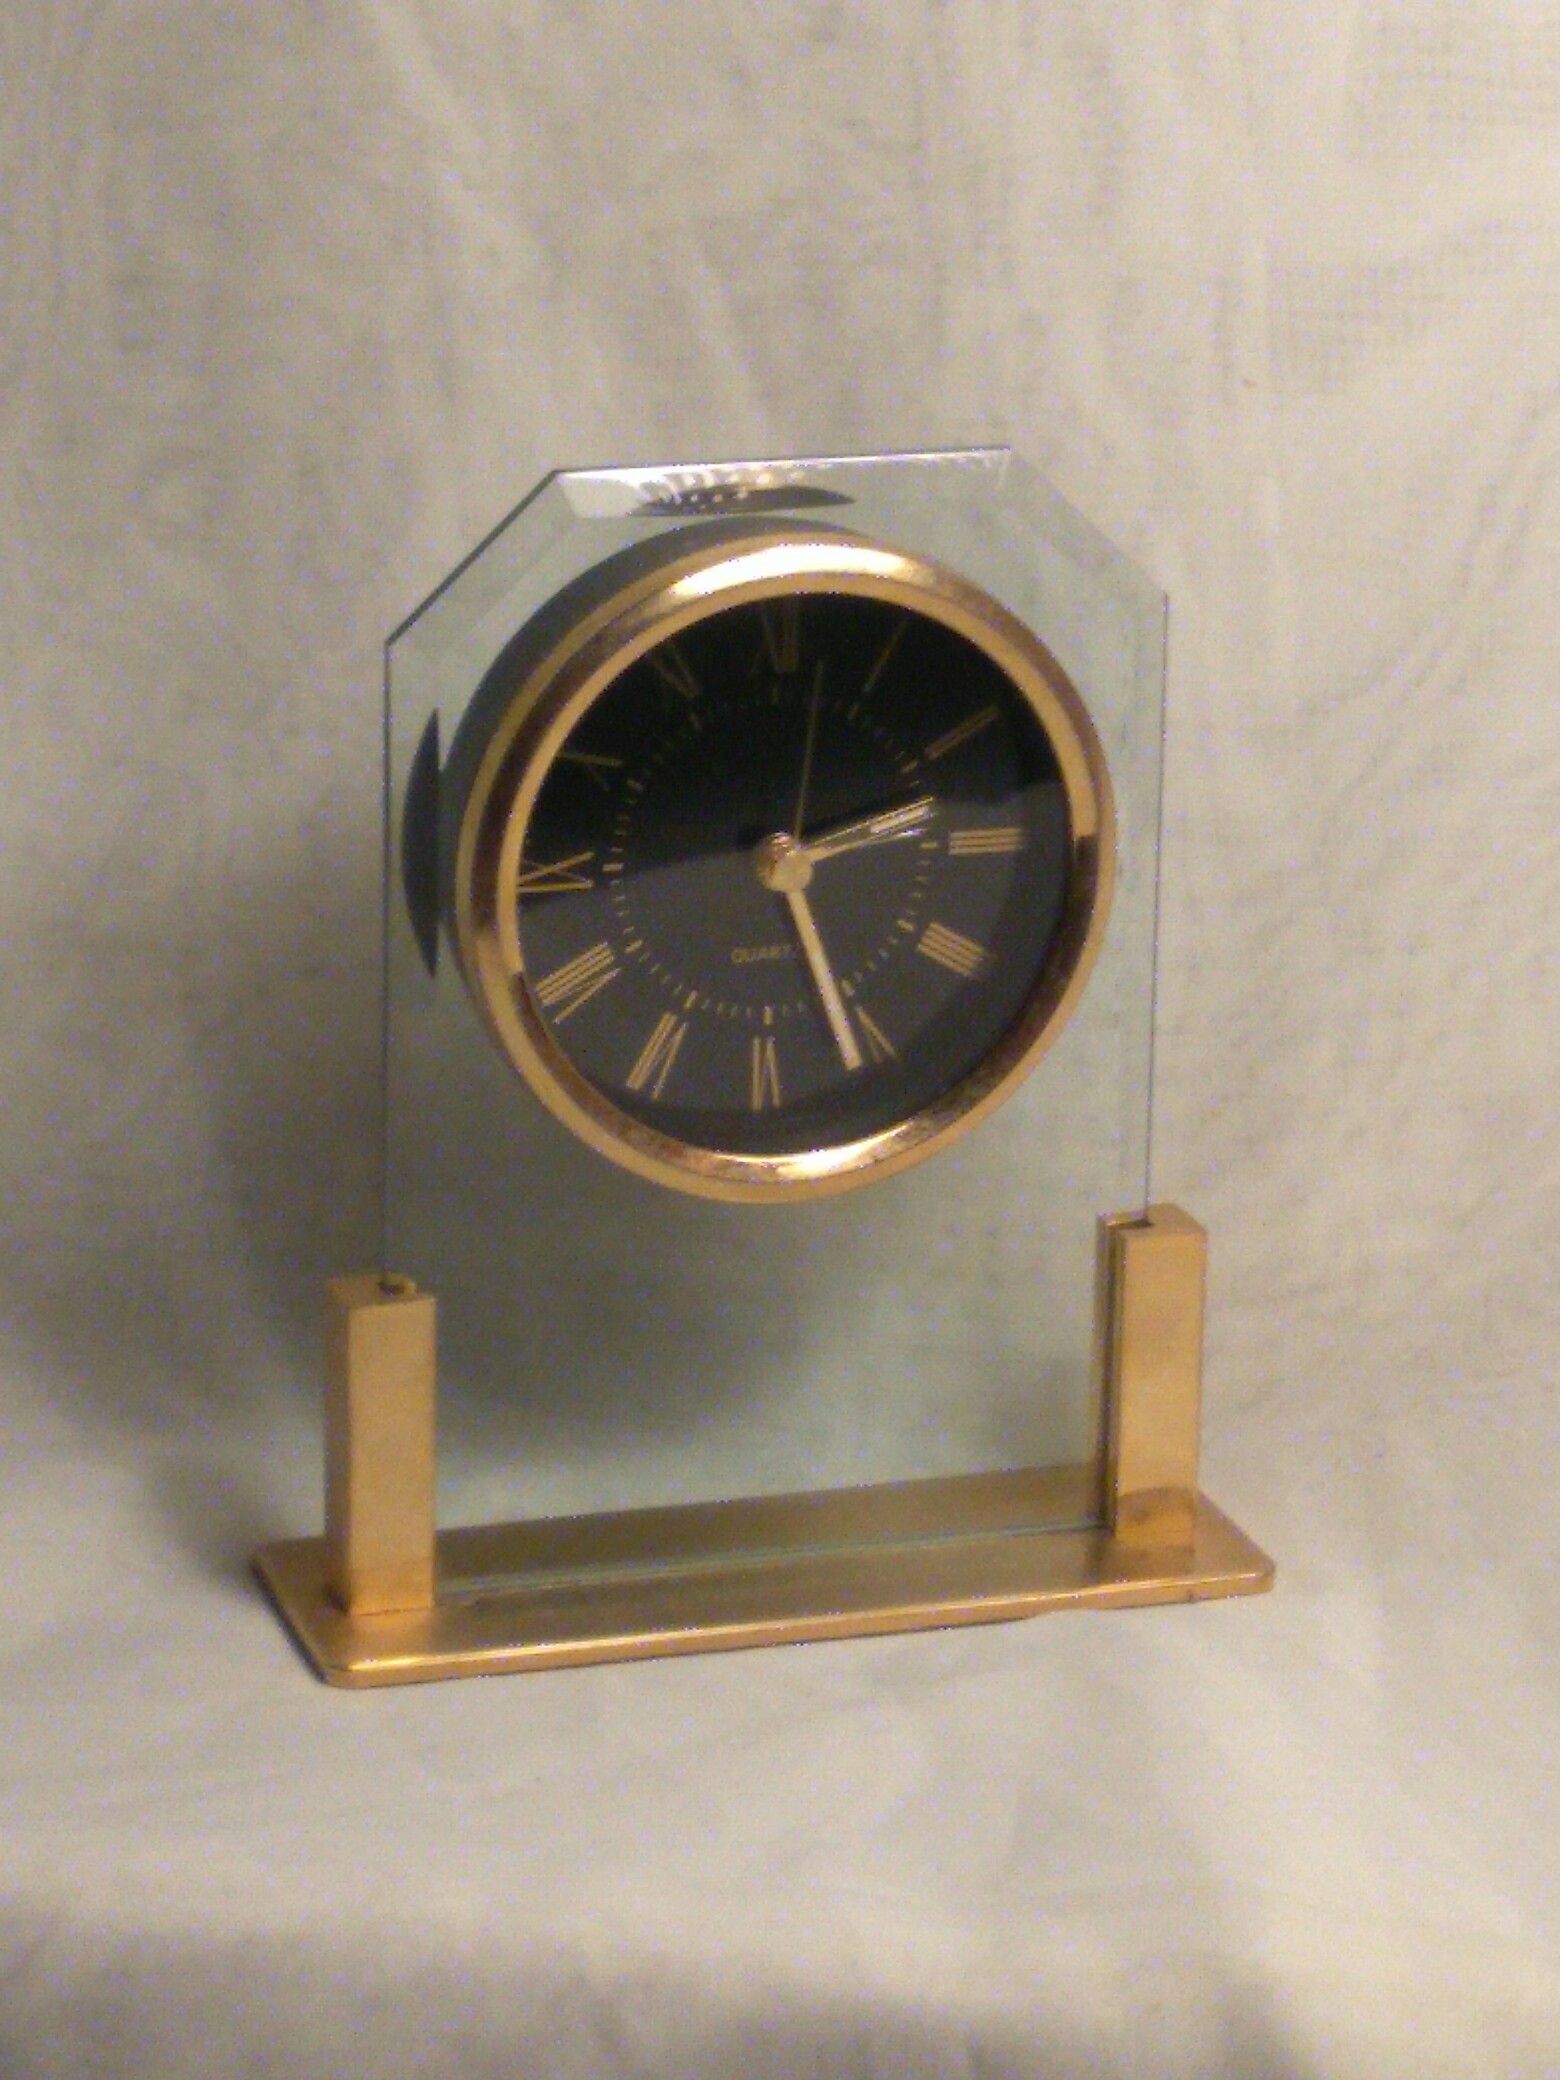 Vintage Quartz Bedside Desk Mantle Clock Gold Tone With Alarm